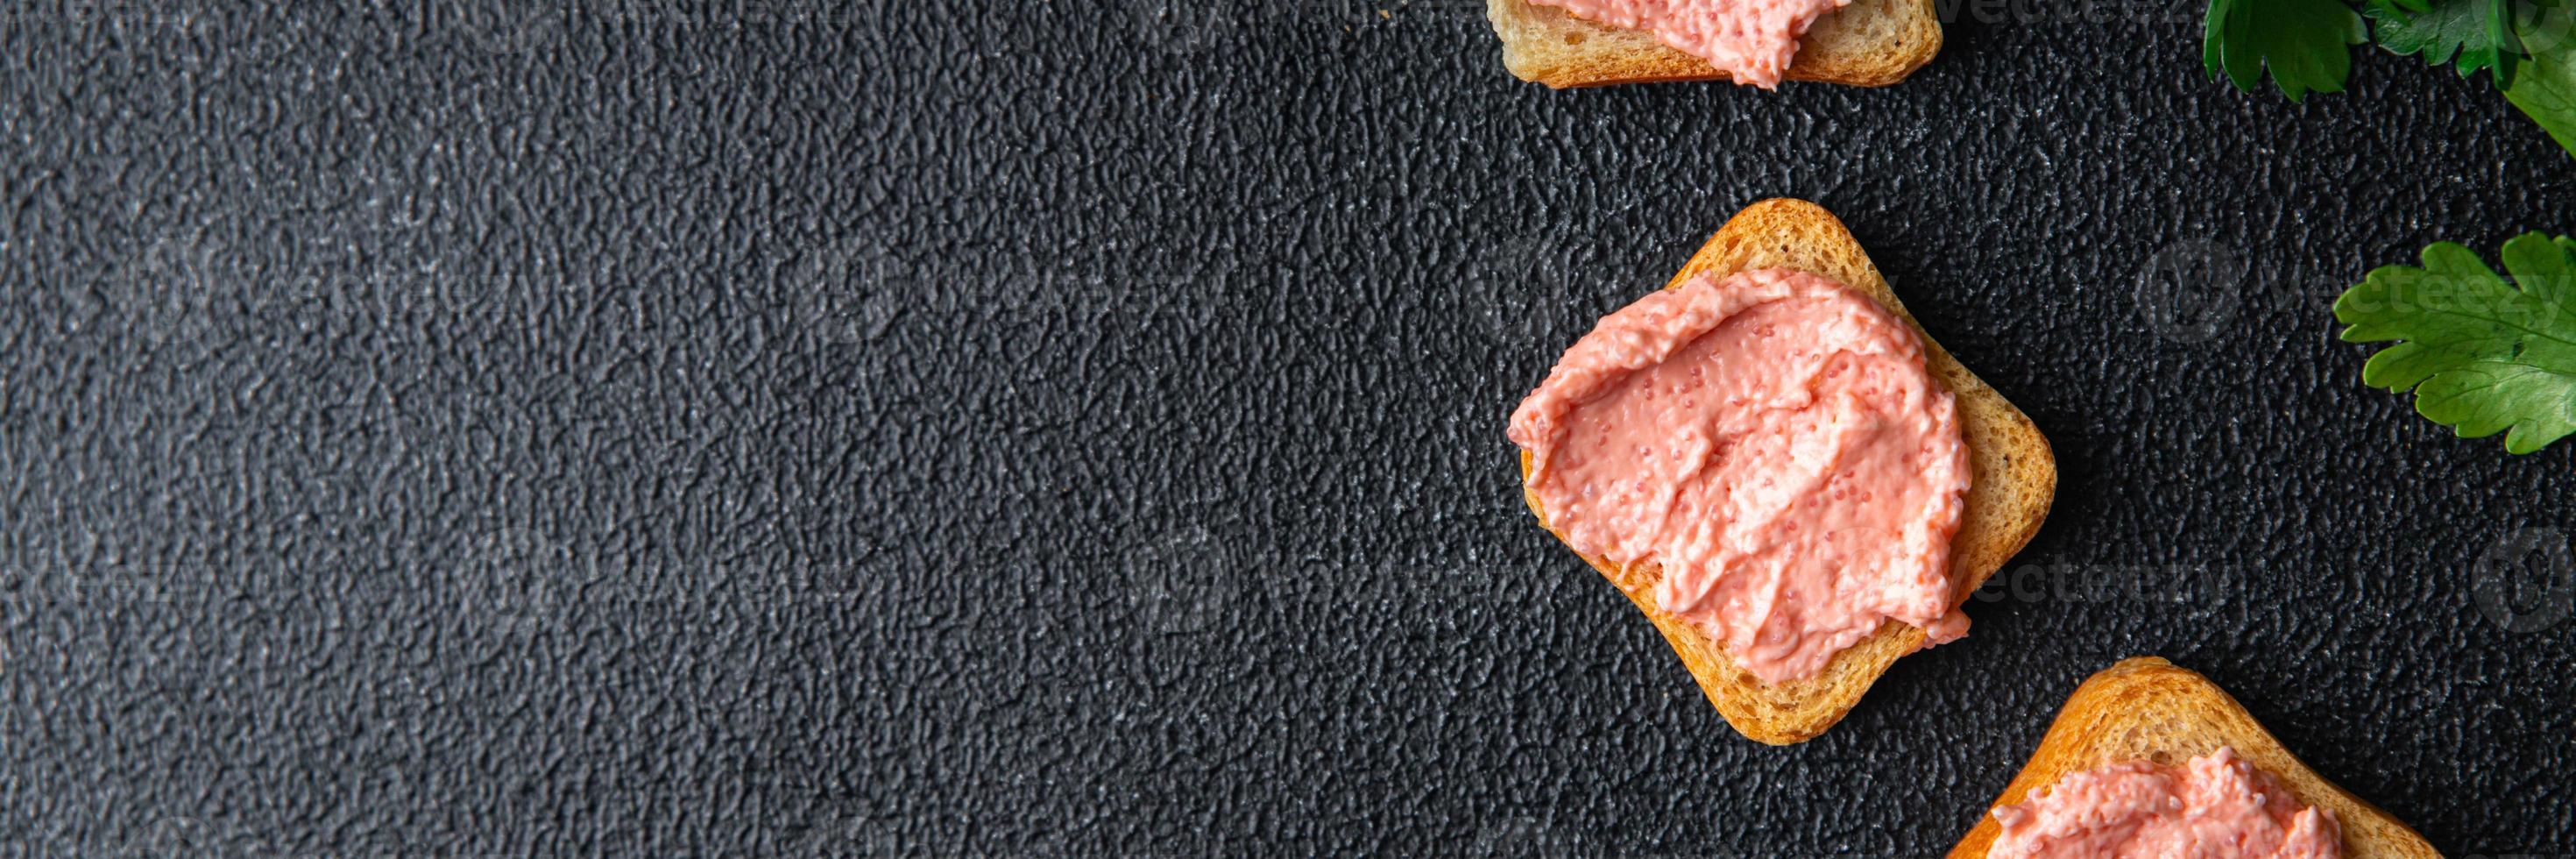 Lodderogen Kaviar Smorrebrod Sandwich Essen Hintergrund foto